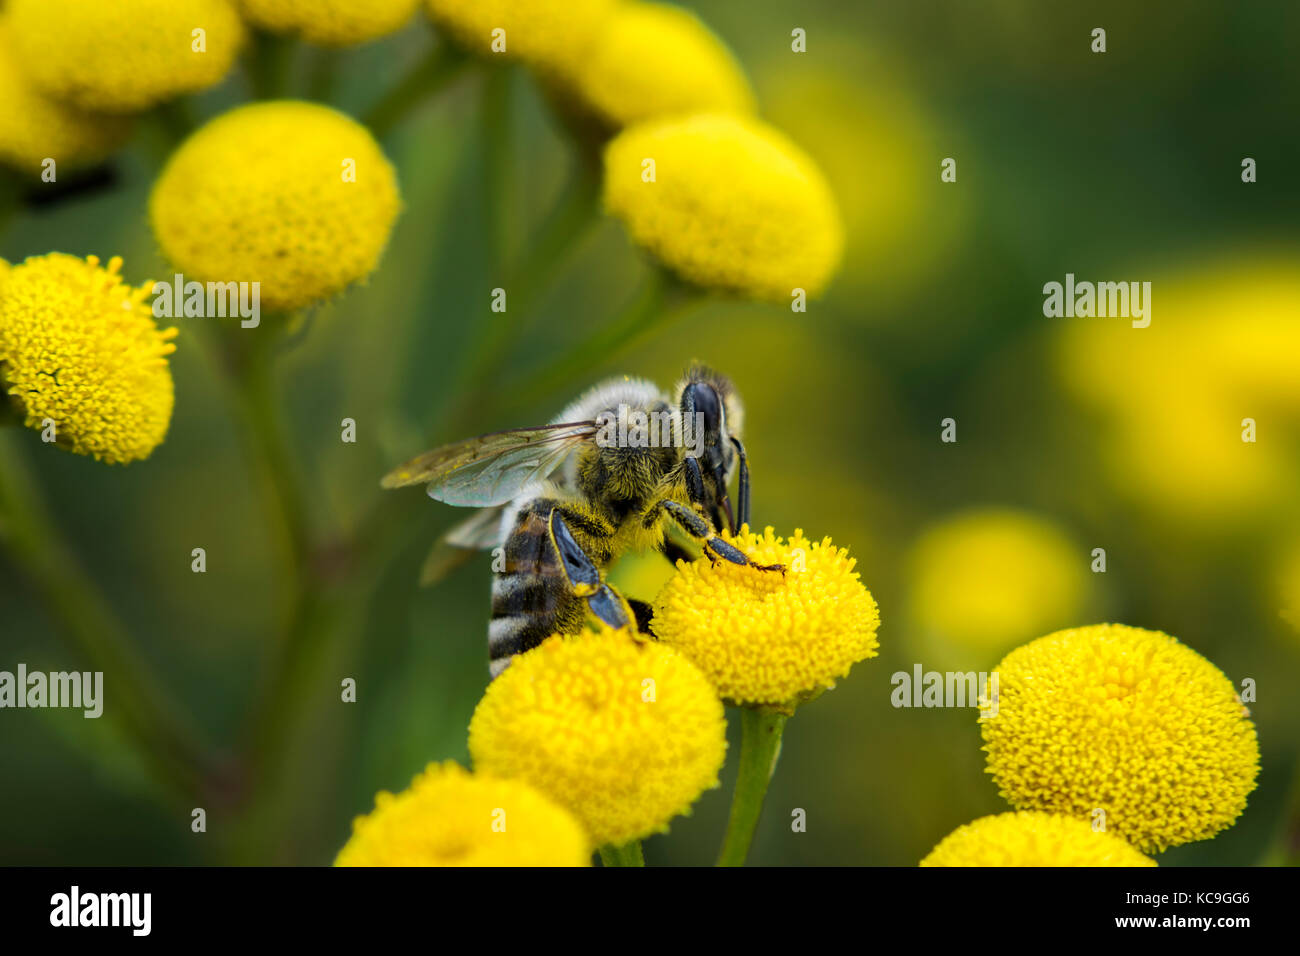 Seite winkel Sicht der Europäischen Honigbiene oder Apis mellifera sammeln Pollen von Gelbe Blume Stockfoto